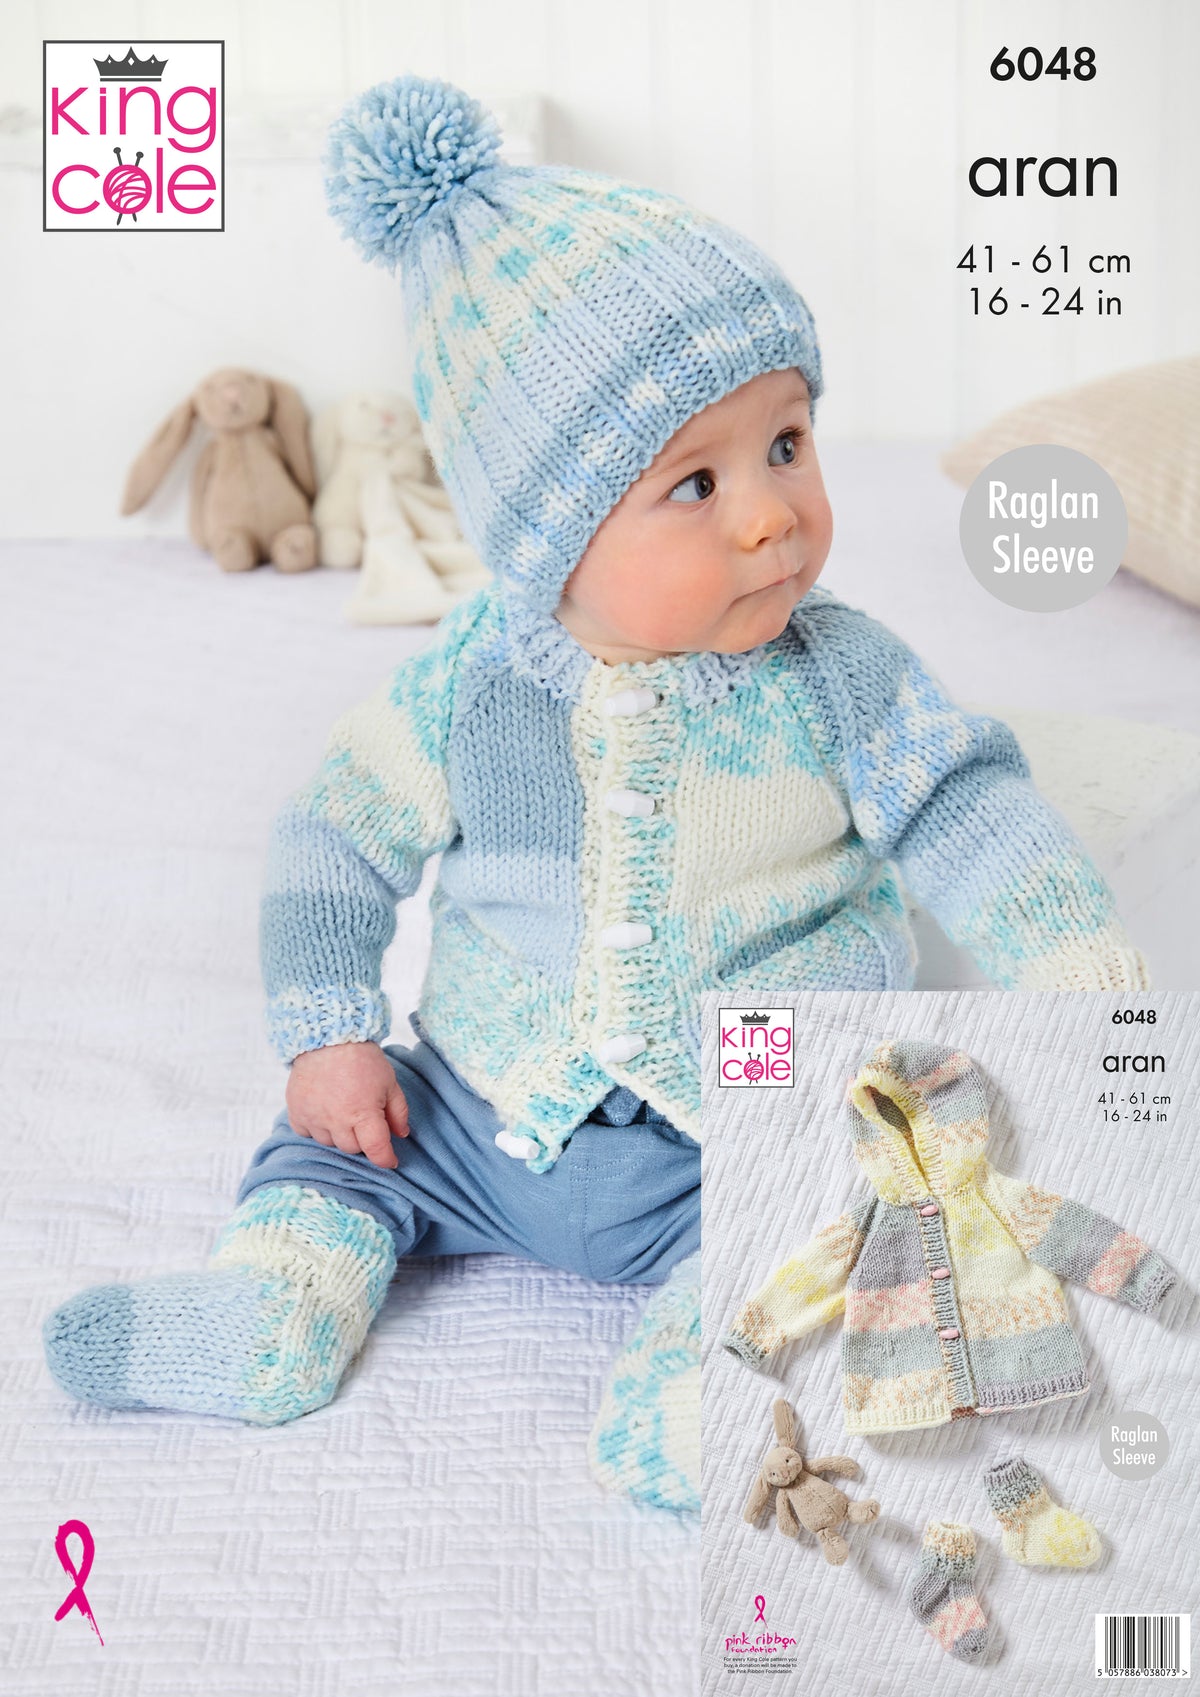 King Cole 6048 Aran Baby Knitting Pattern - Jacket, Coat, Hat, & Socks ...